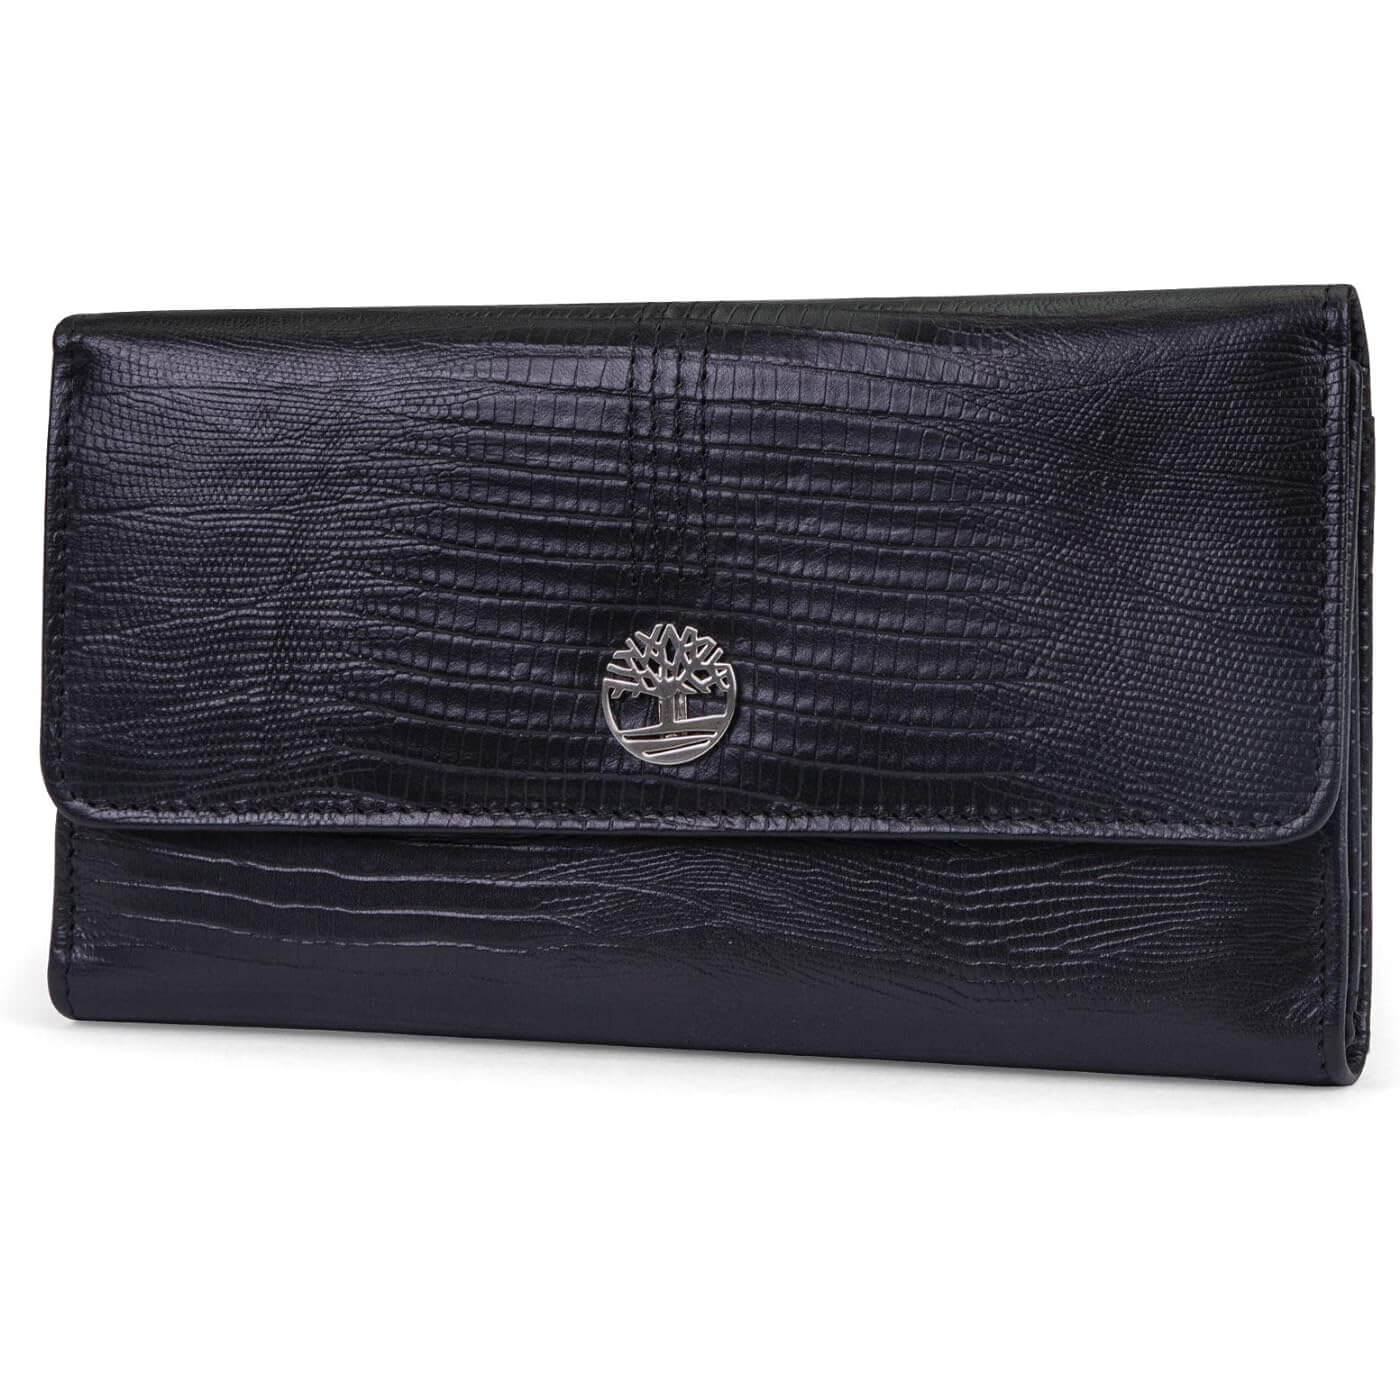 Кожаный кошелек-клатч Timberland RFID Flap Organizer, черный кошелек кожаный женский lison kaoberg k 9102